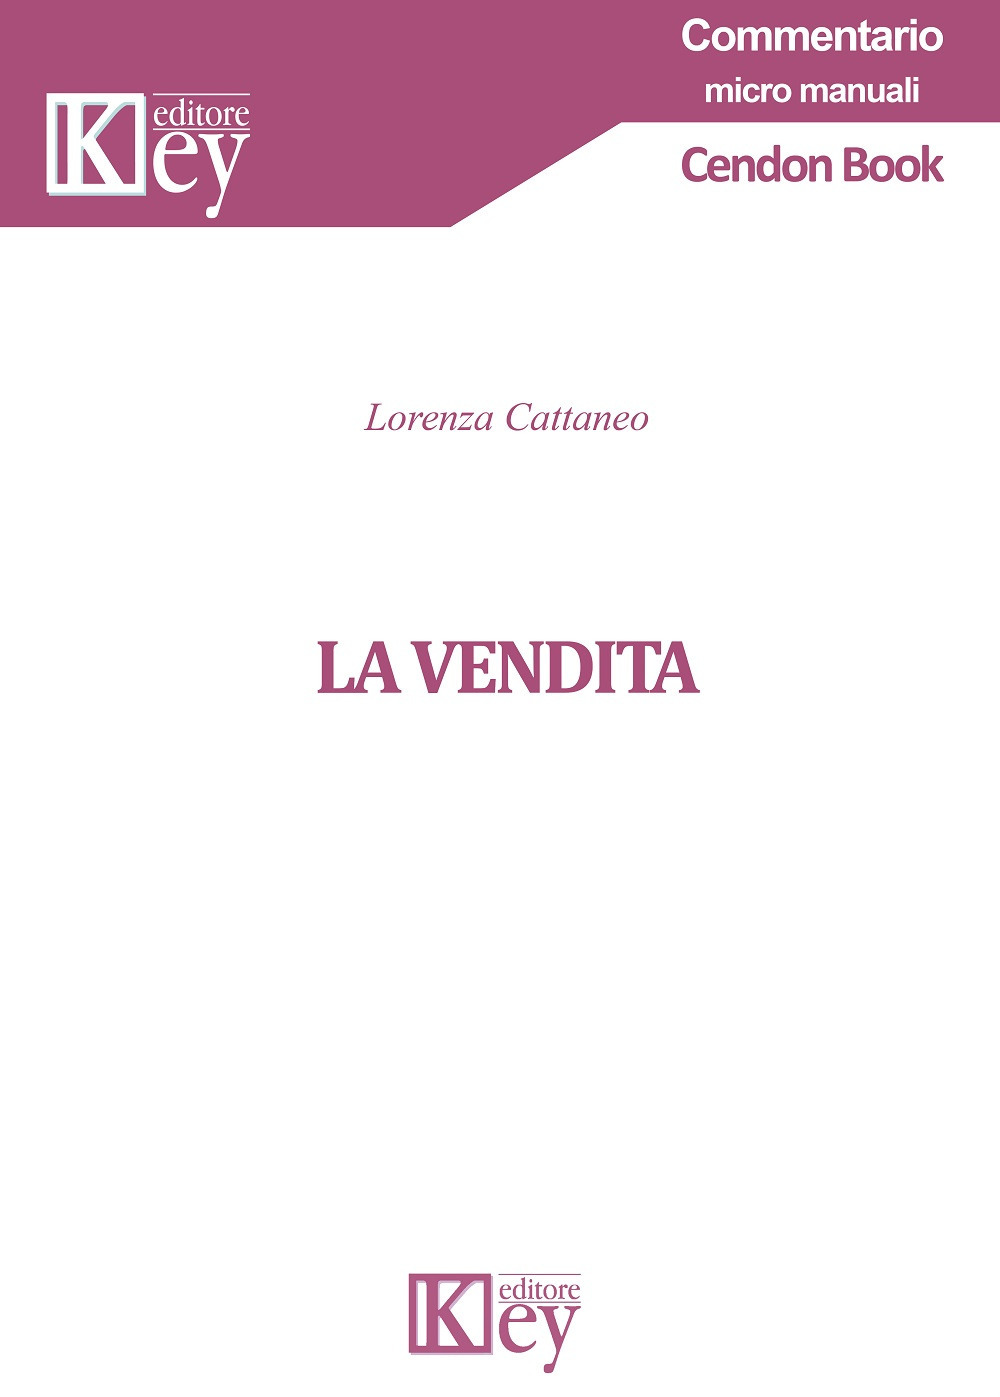 Libri Cattaneo Lorenza - La Vendita NUOVO SIGILLATO EDIZIONE DEL SUBITO DISPONIBILE